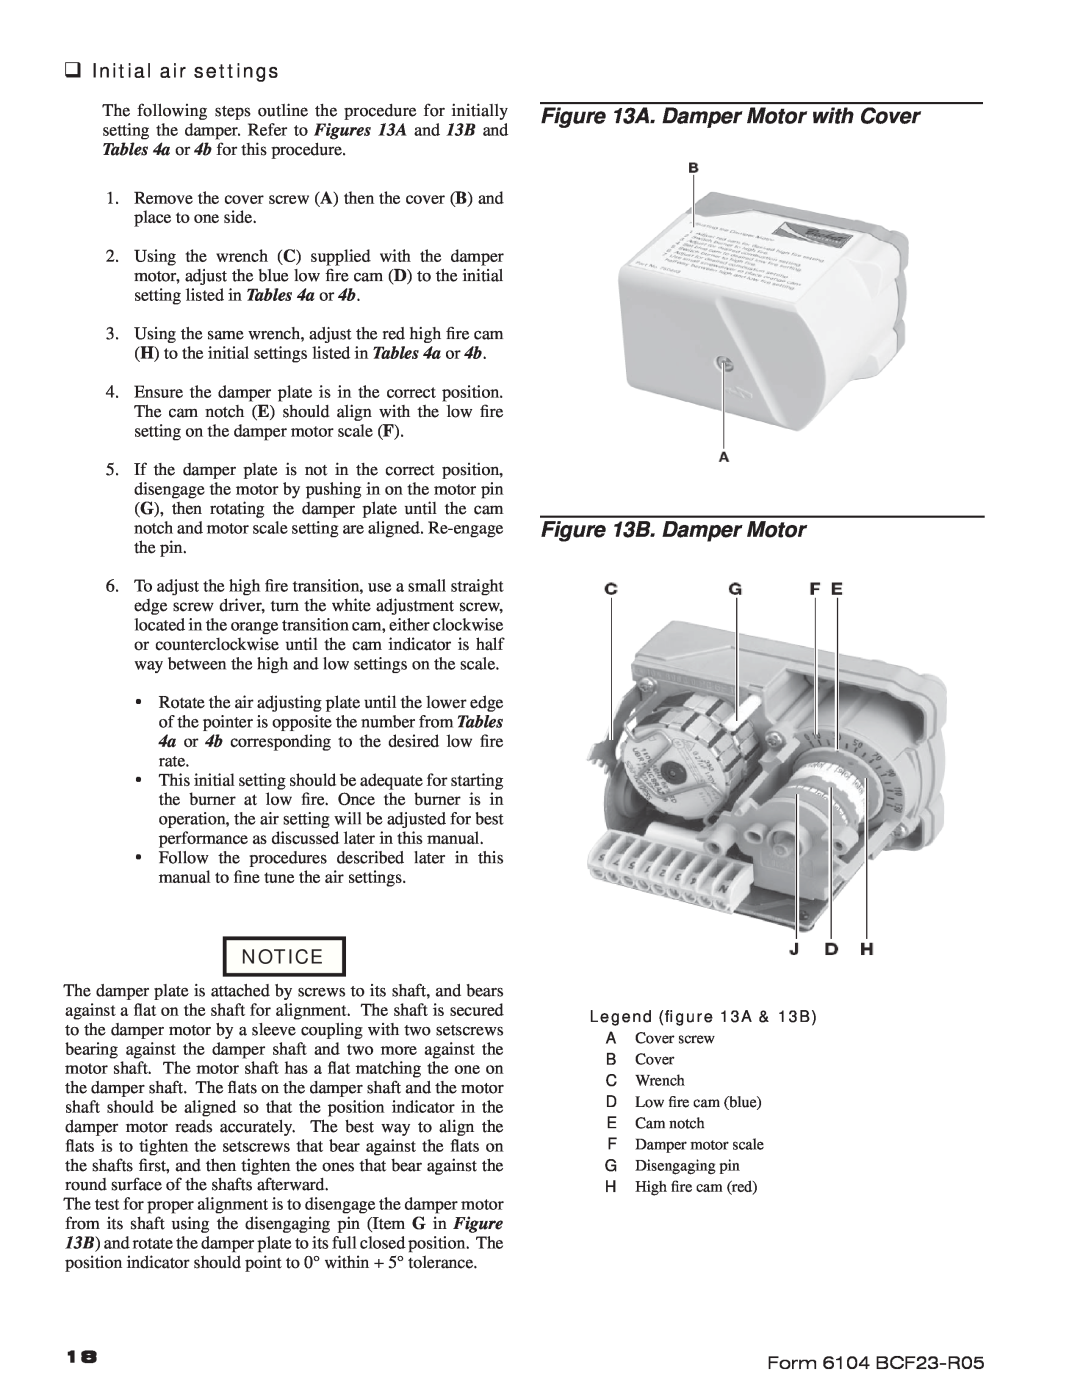 Beckett CF2300, CF1400 manual A. Damper Motor with Cover B. Damper Motor, ‰ Initial air settings 